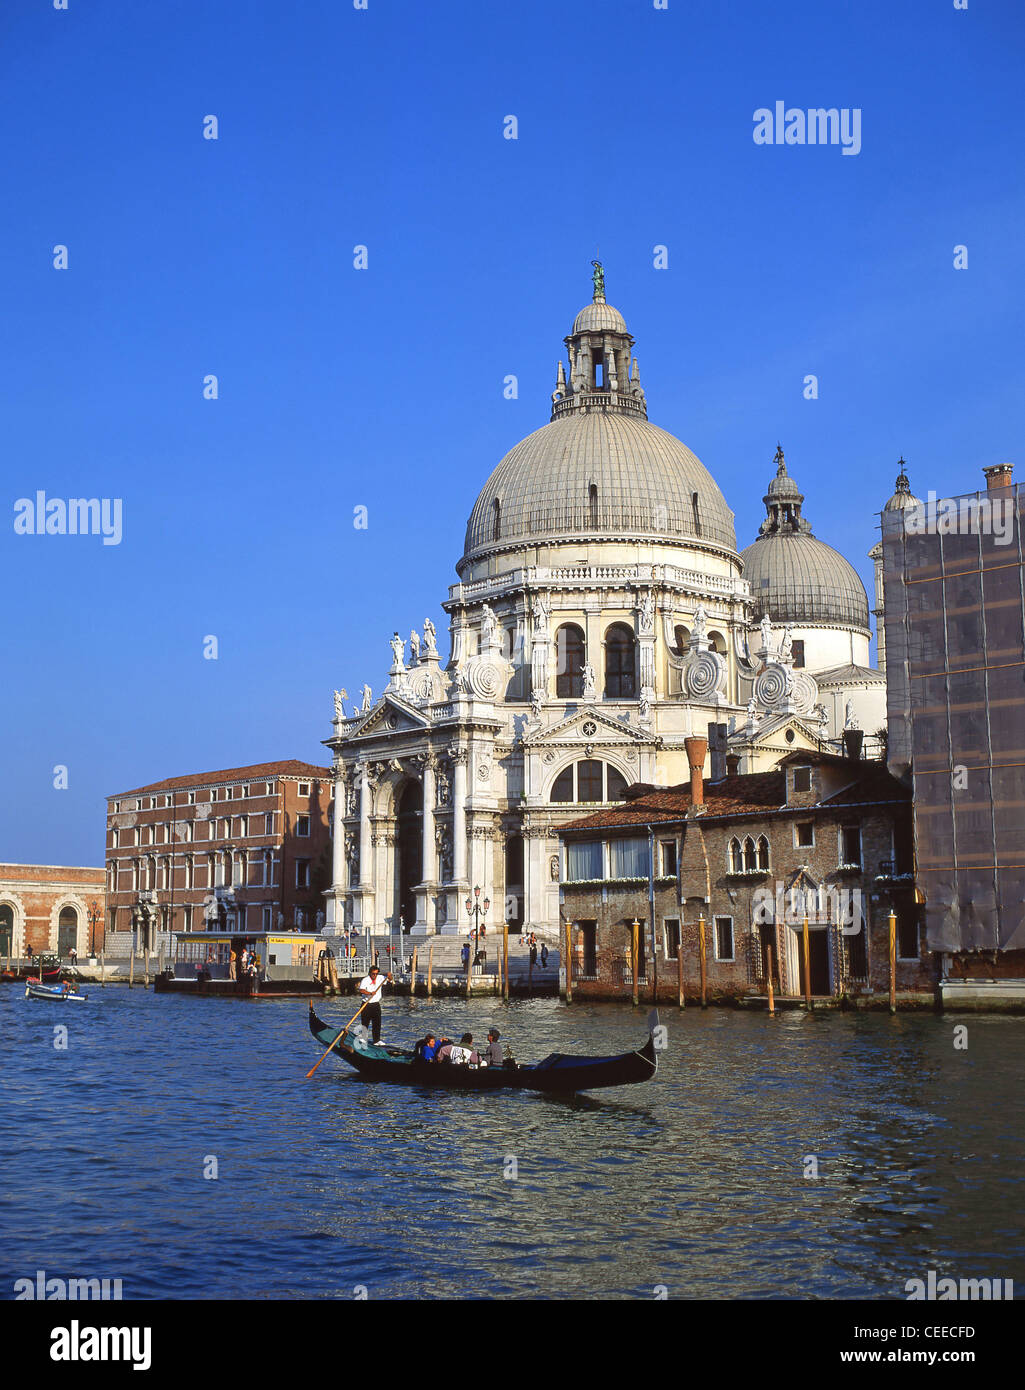 Gondola on Grand Canal showing Santa Maria Della Salute, Venice, Venice Province, Veneto Region, Italy Stock Photo